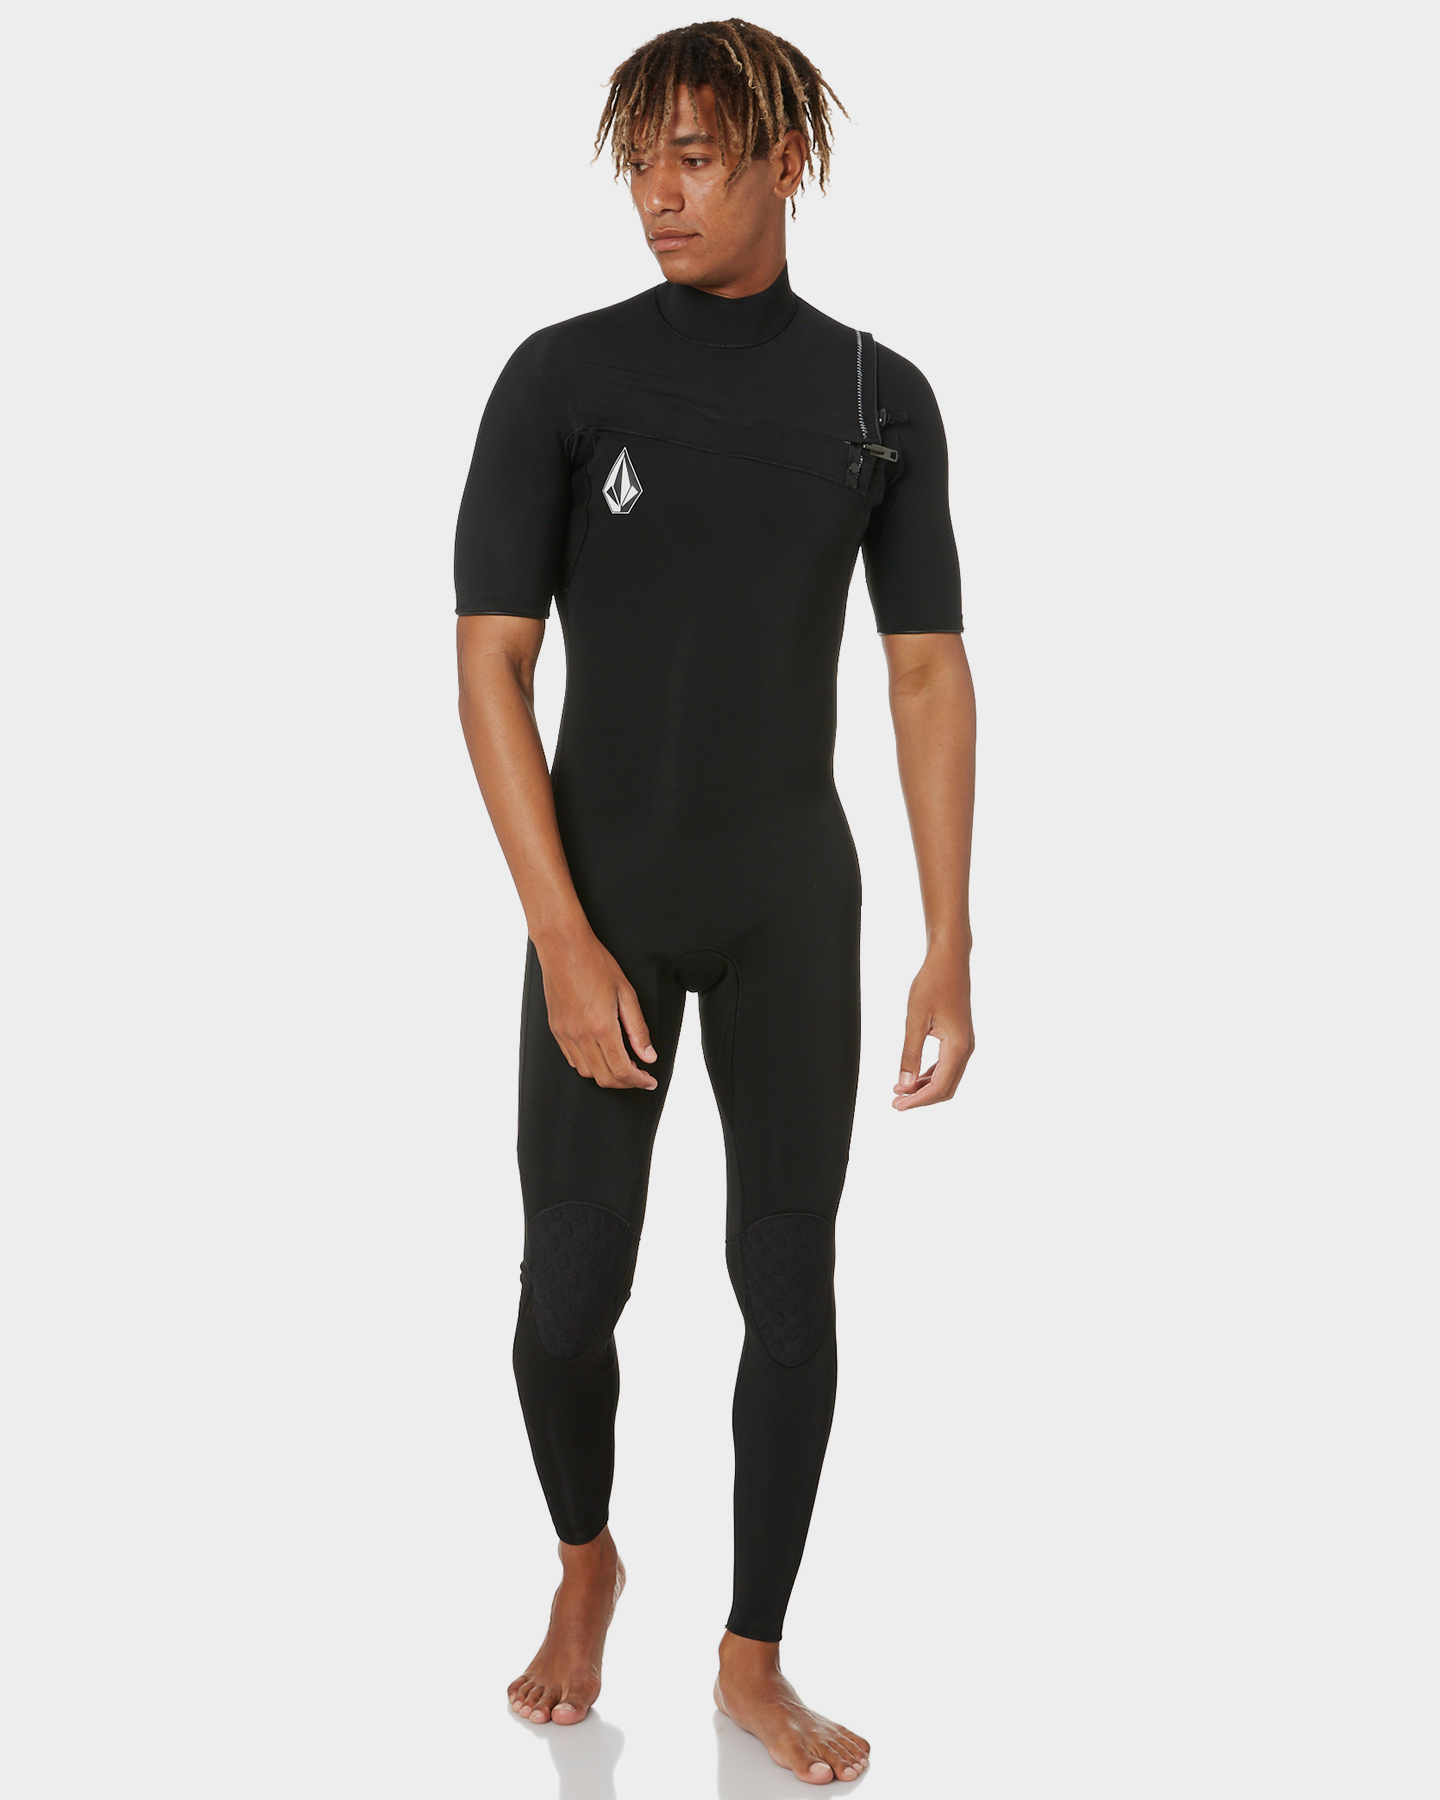 Volcom 2X2 Chest Zip Ss Wetsuit - Black | SurfStitch